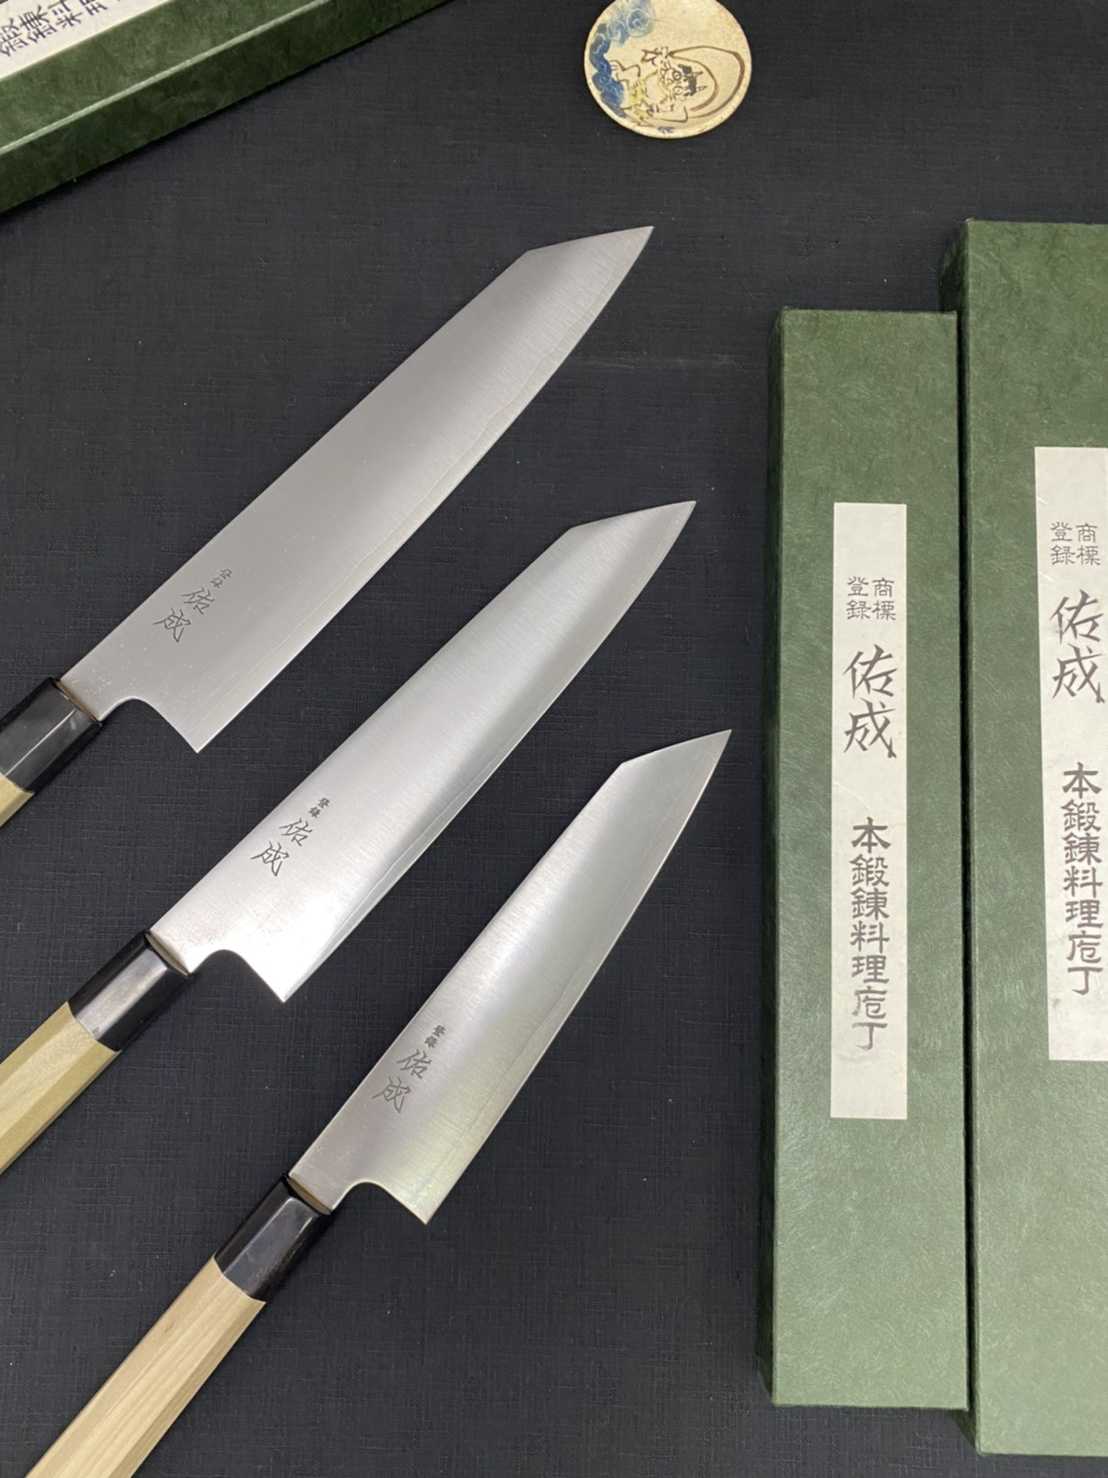 💖現貨💖 佑成【 SG-2 粉末鋼 (抗鏽) 劍形和牛刀 21cm 】日本製 廚房刀具 八煌刃物